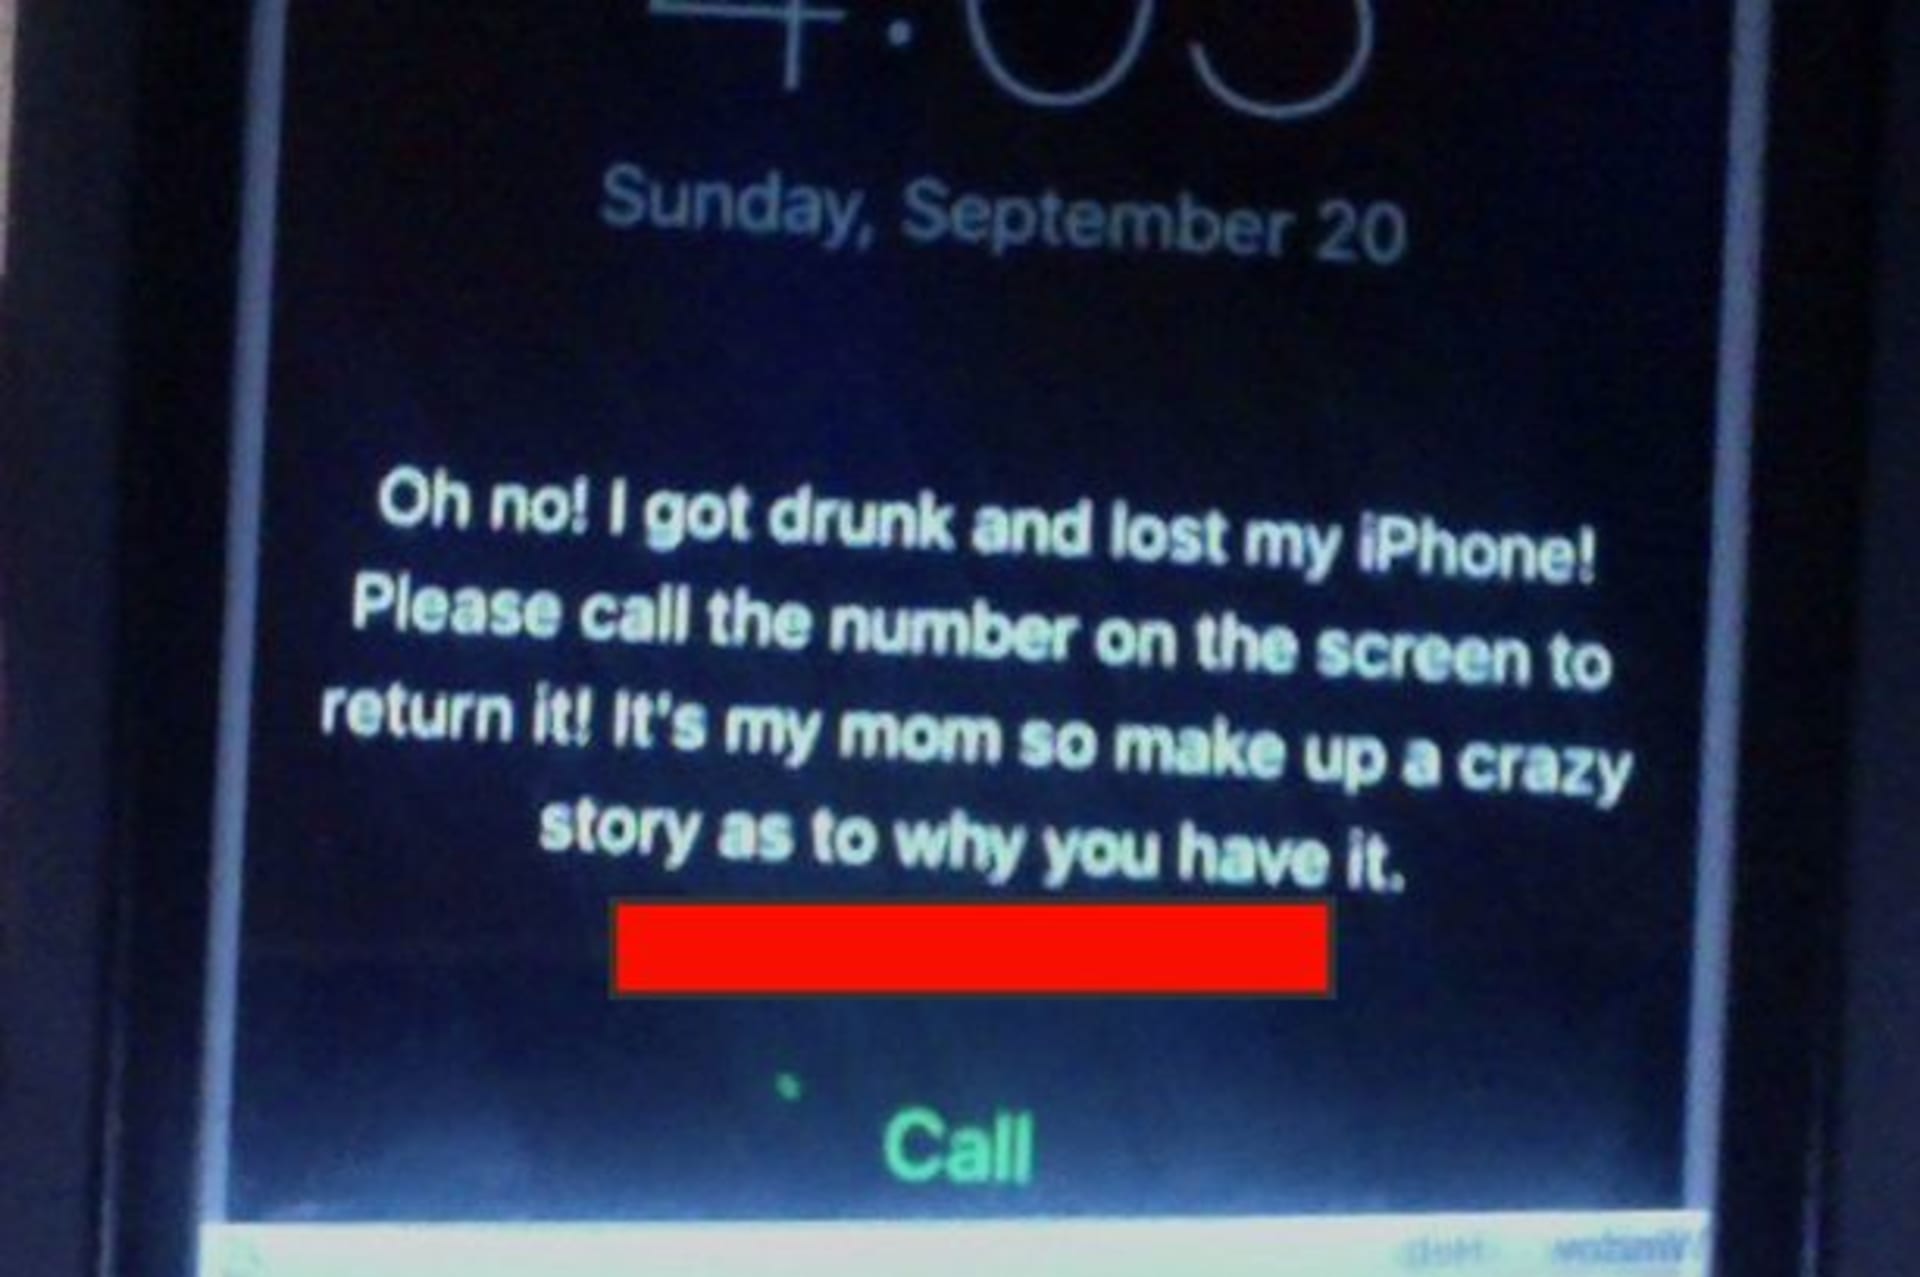 Díky tomuto vzkazu se iPhone vrátil ke svému majiteli a ještě pobavil svět...